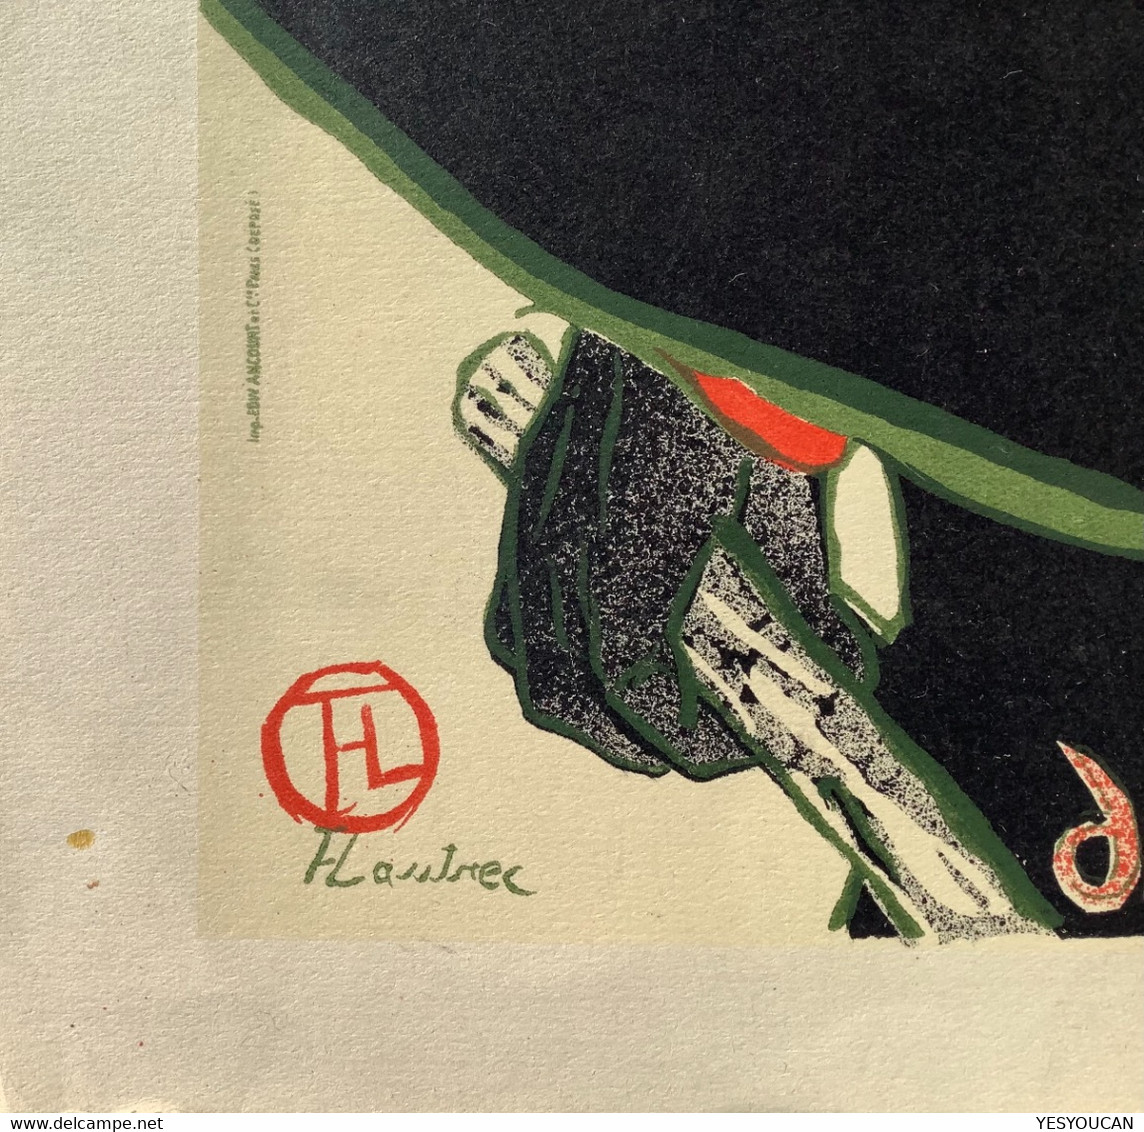 TOULOUSE-LAUTREC: “ARISTIDE BRUANT CABARET (1893)” LITHOGRAPH Vintage~1930-1950th Ex R.G MICHEL, PARIS (lithographie Art - Lithographien